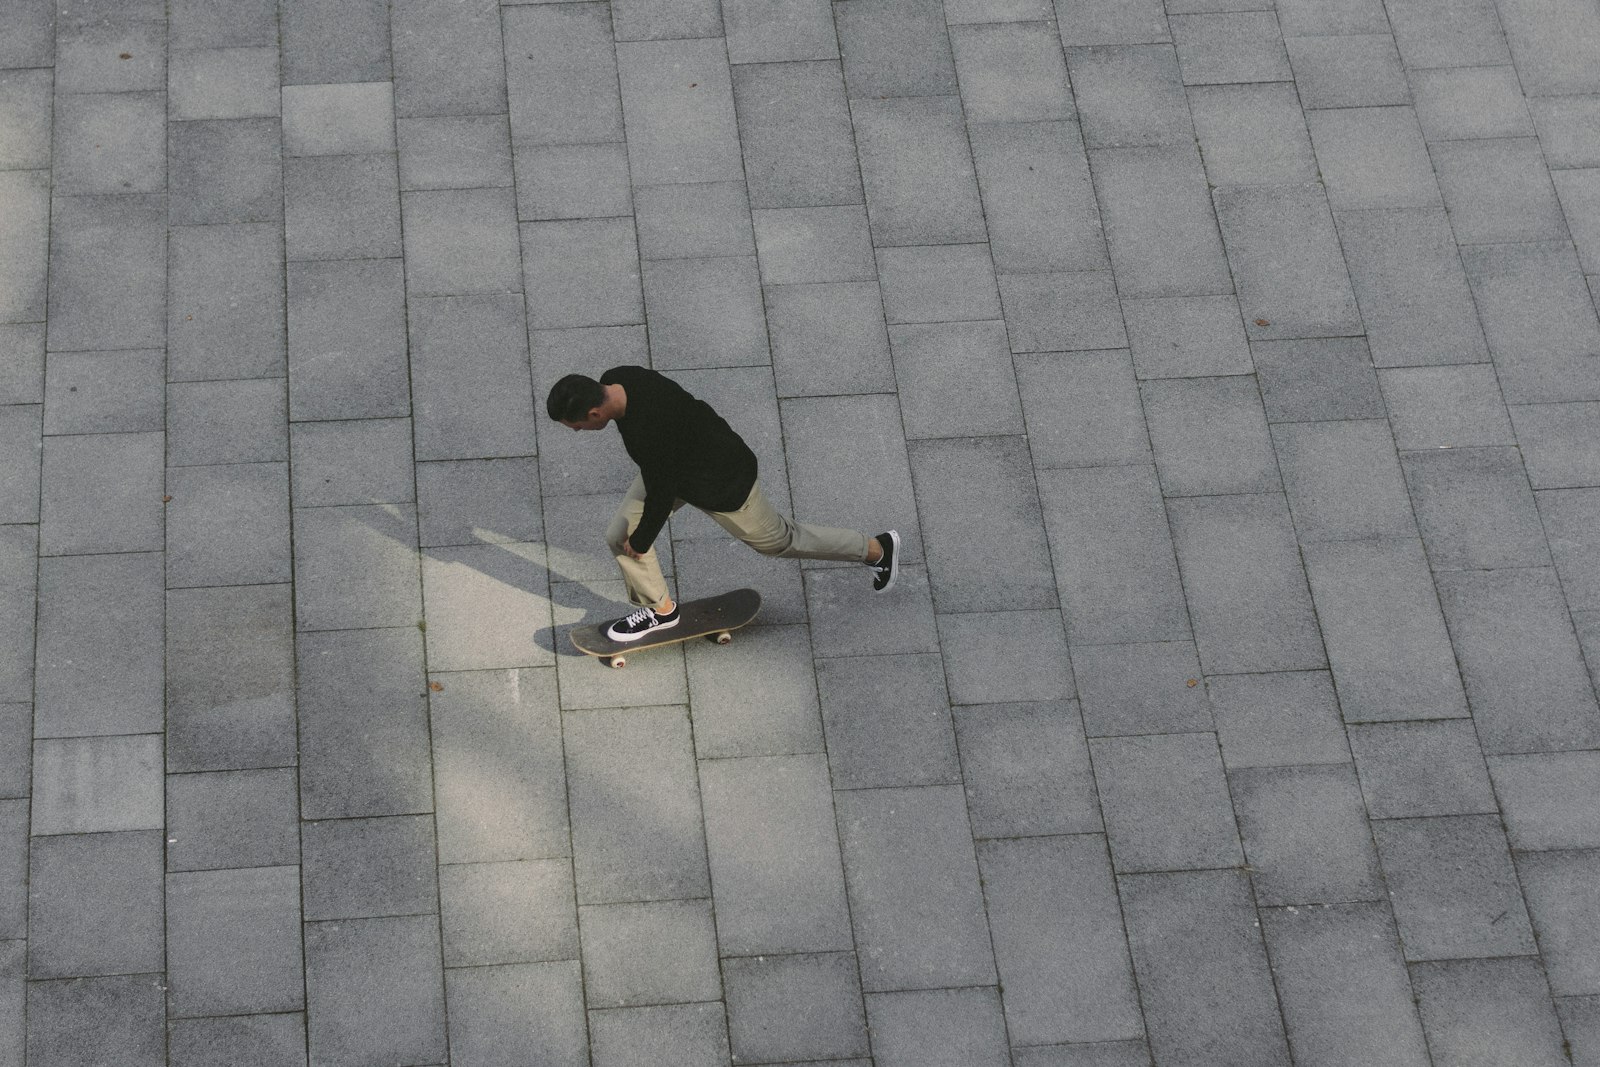 Nikon D7100 + Nikon AF-S Nikkor 50mm F1.8G sample photo. Man skateboarding on concrete photography